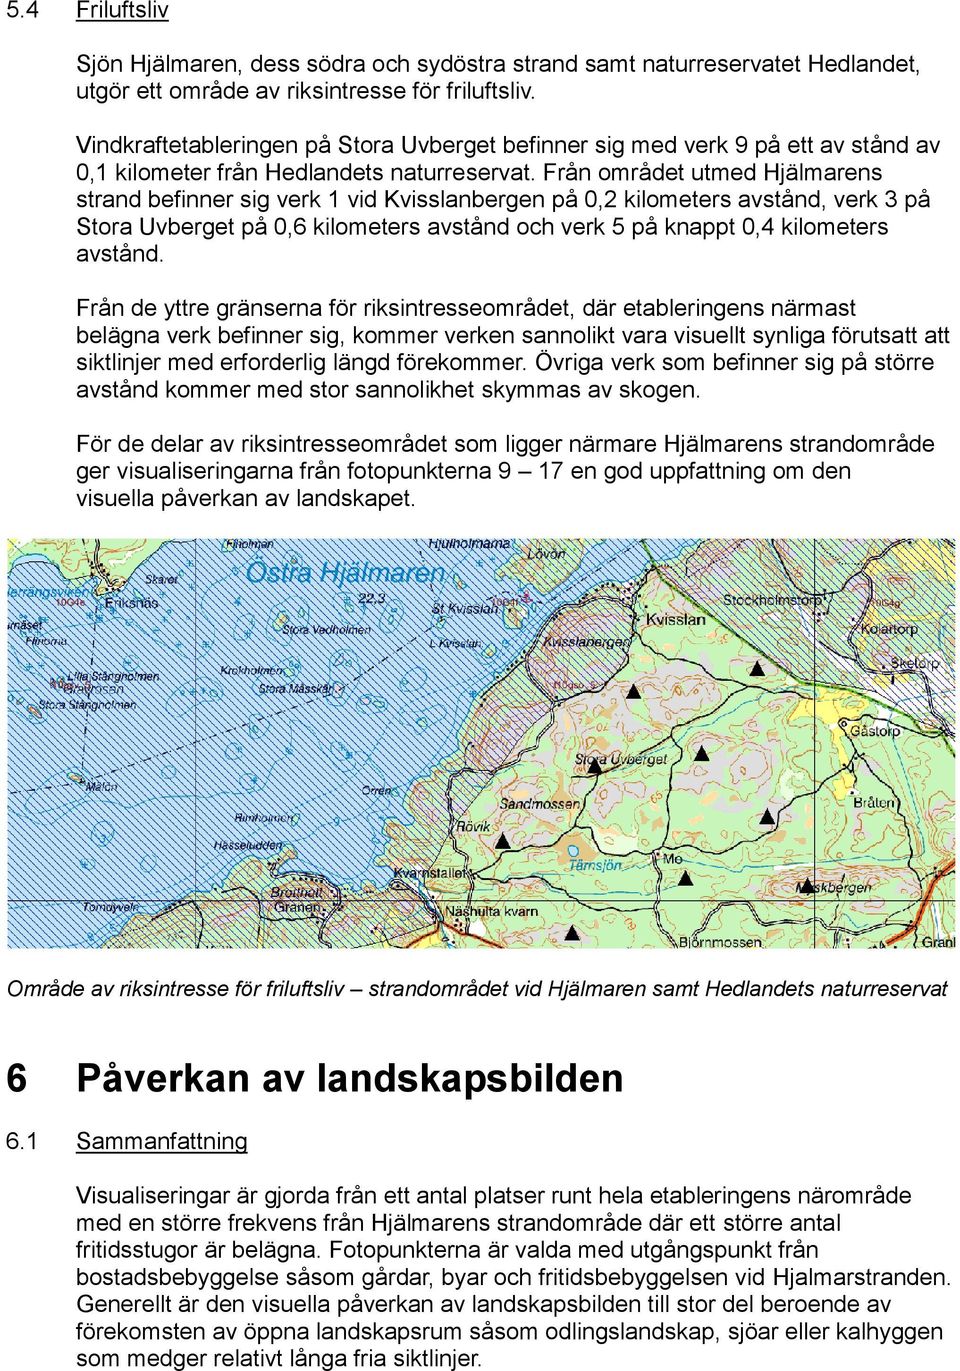 Från området utmed Hjälmarens strand befinner sig verk 1 vid Kvisslanbergen på 0,2 kilometers avstånd, verk 3 på Stora Uvberget på 0,6 kilometers avstånd och verk 5 på knappt 0,4 kilometers avstånd.